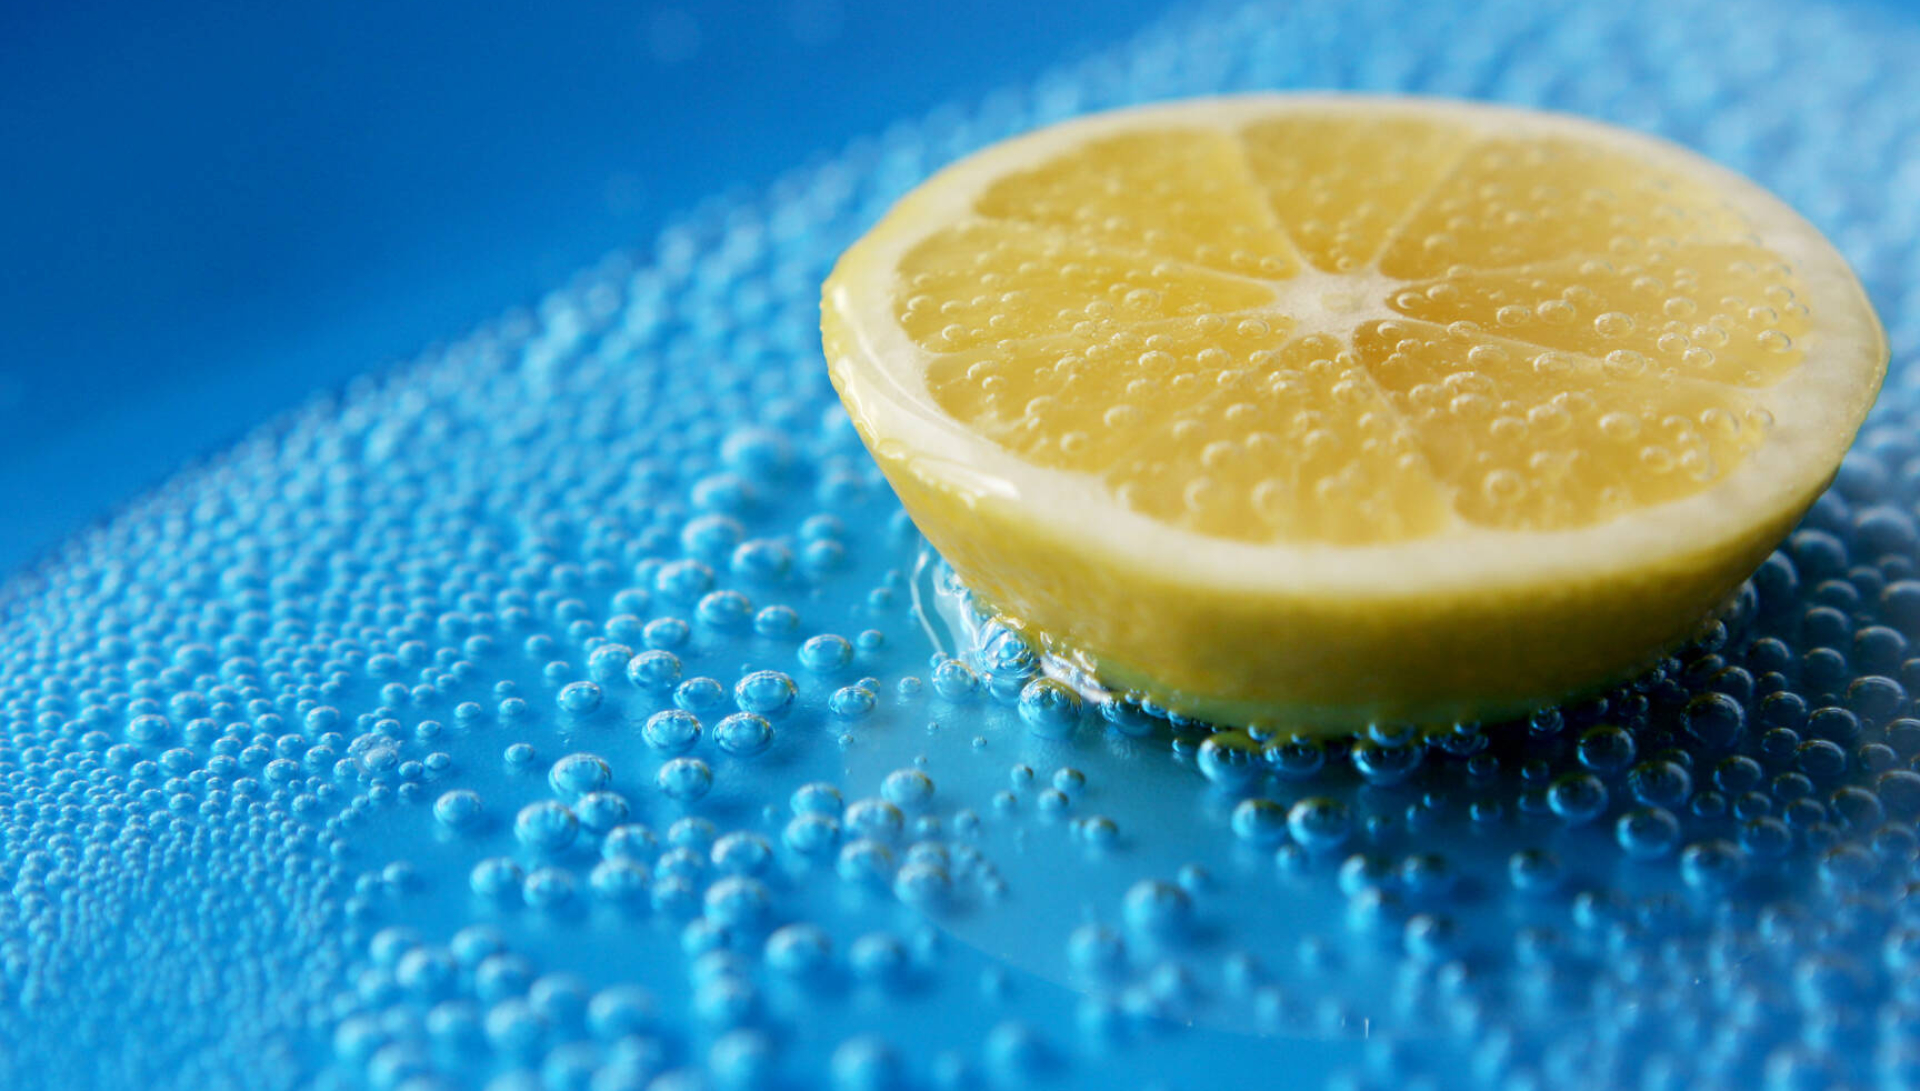 Lemons in water, Citrus refreshment, Soda water image, Citrus fusion, 1920x1100 HD Desktop